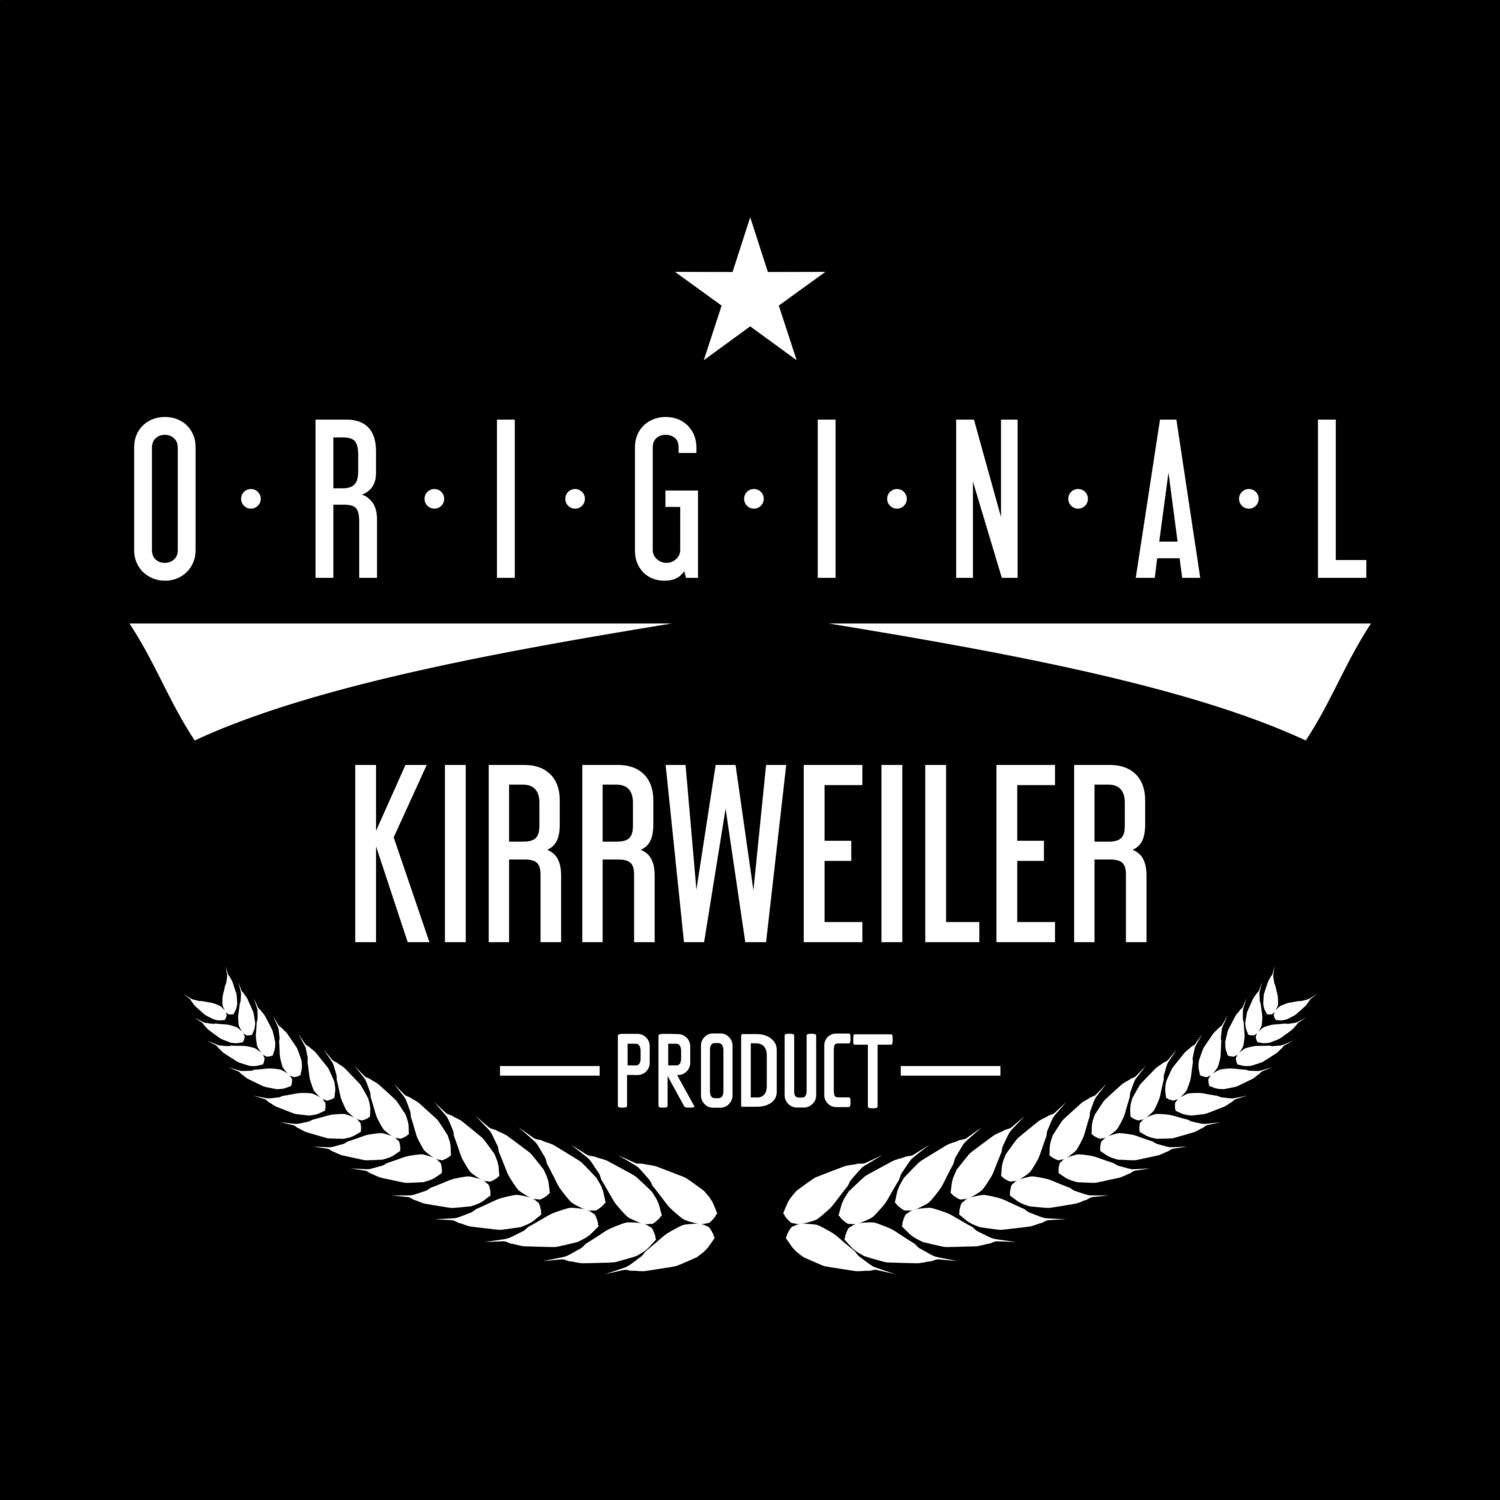 Kirrweiler T-Shirt »Original Product«